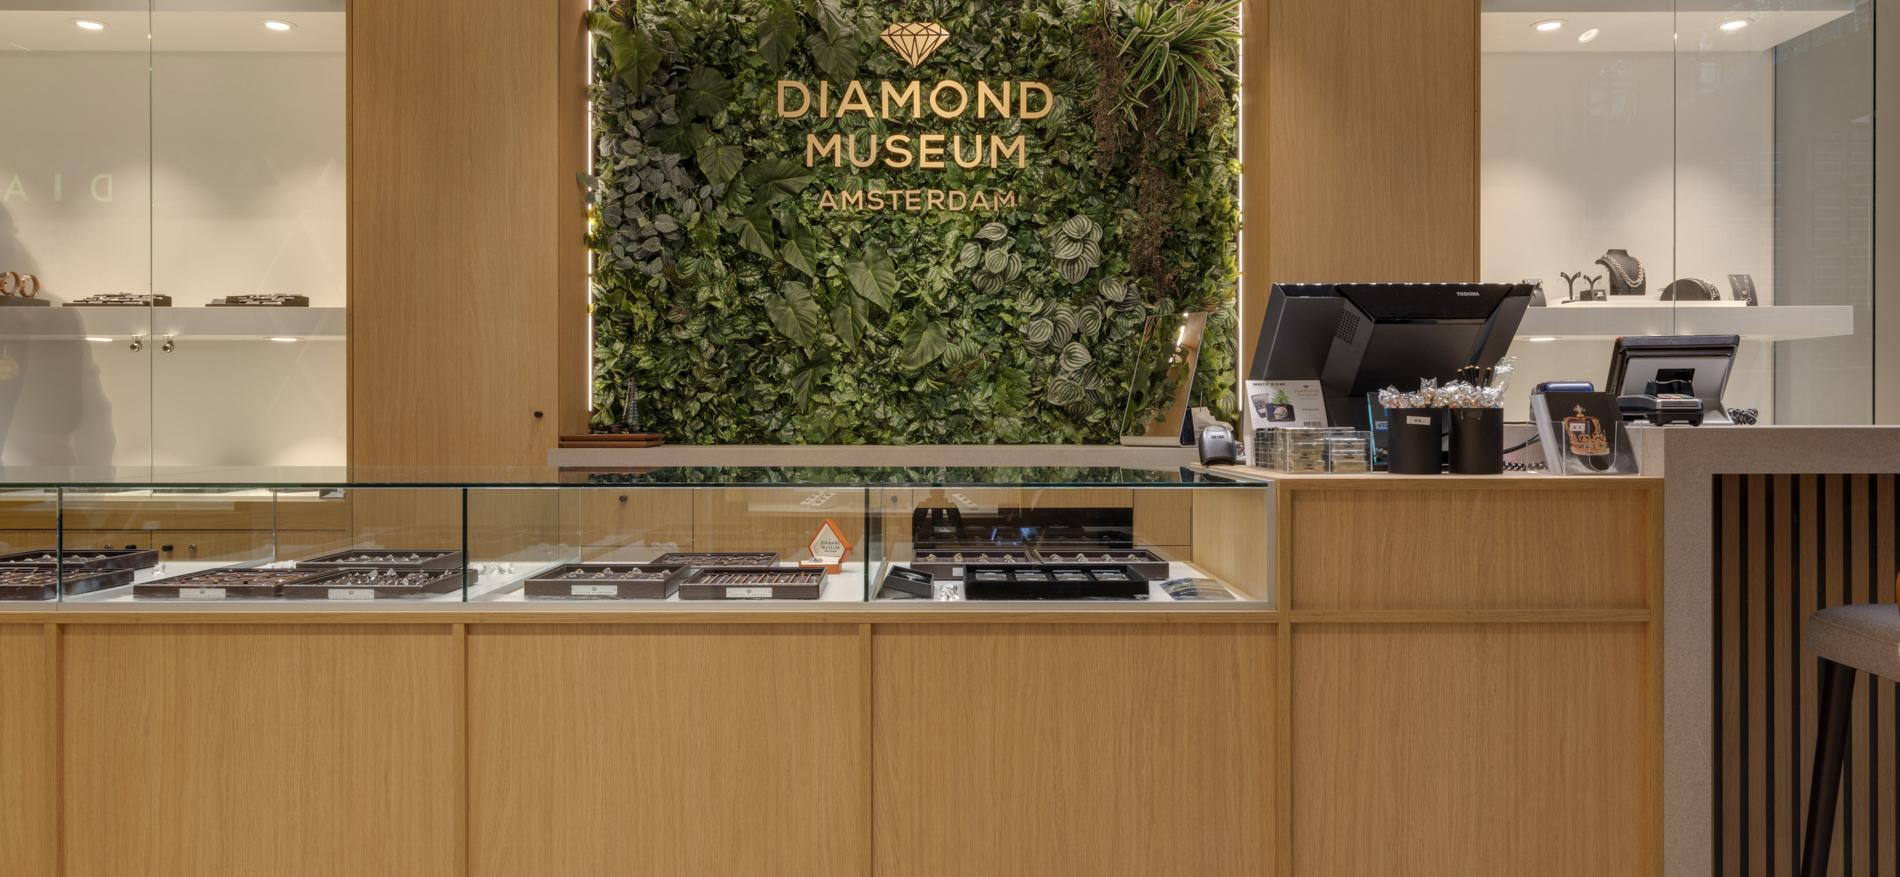 Diamond Museum | Amsterdam (NL) - 